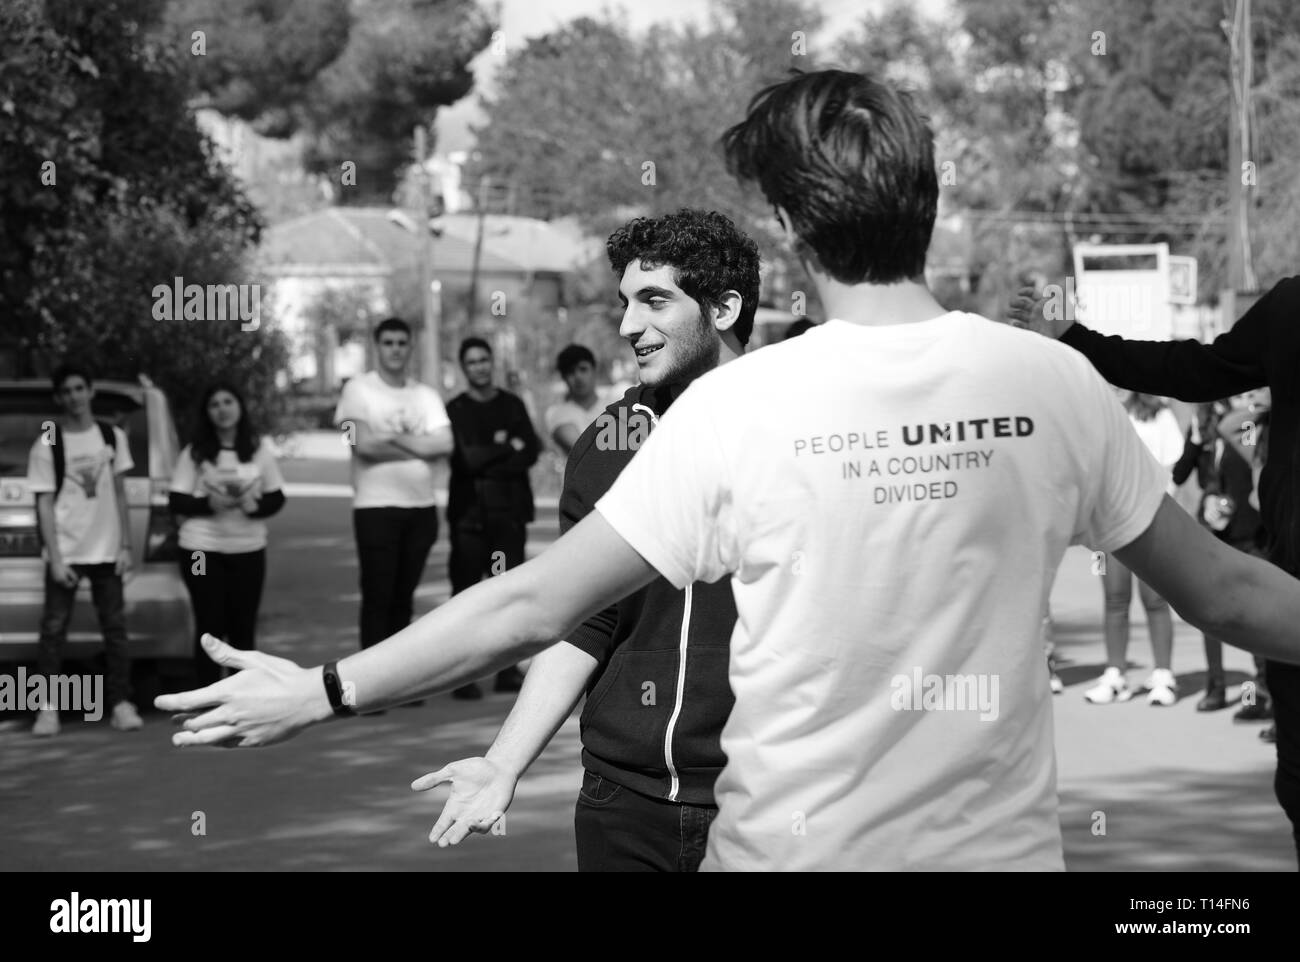 Die bi-kommunale Zypern Freundschaft Programm zielt darauf ab, die Bande der Freundschaft und des Vertrauens unter den Jugendlichen der Gemeinschaften von Zypern zu erstellen. Stockfoto